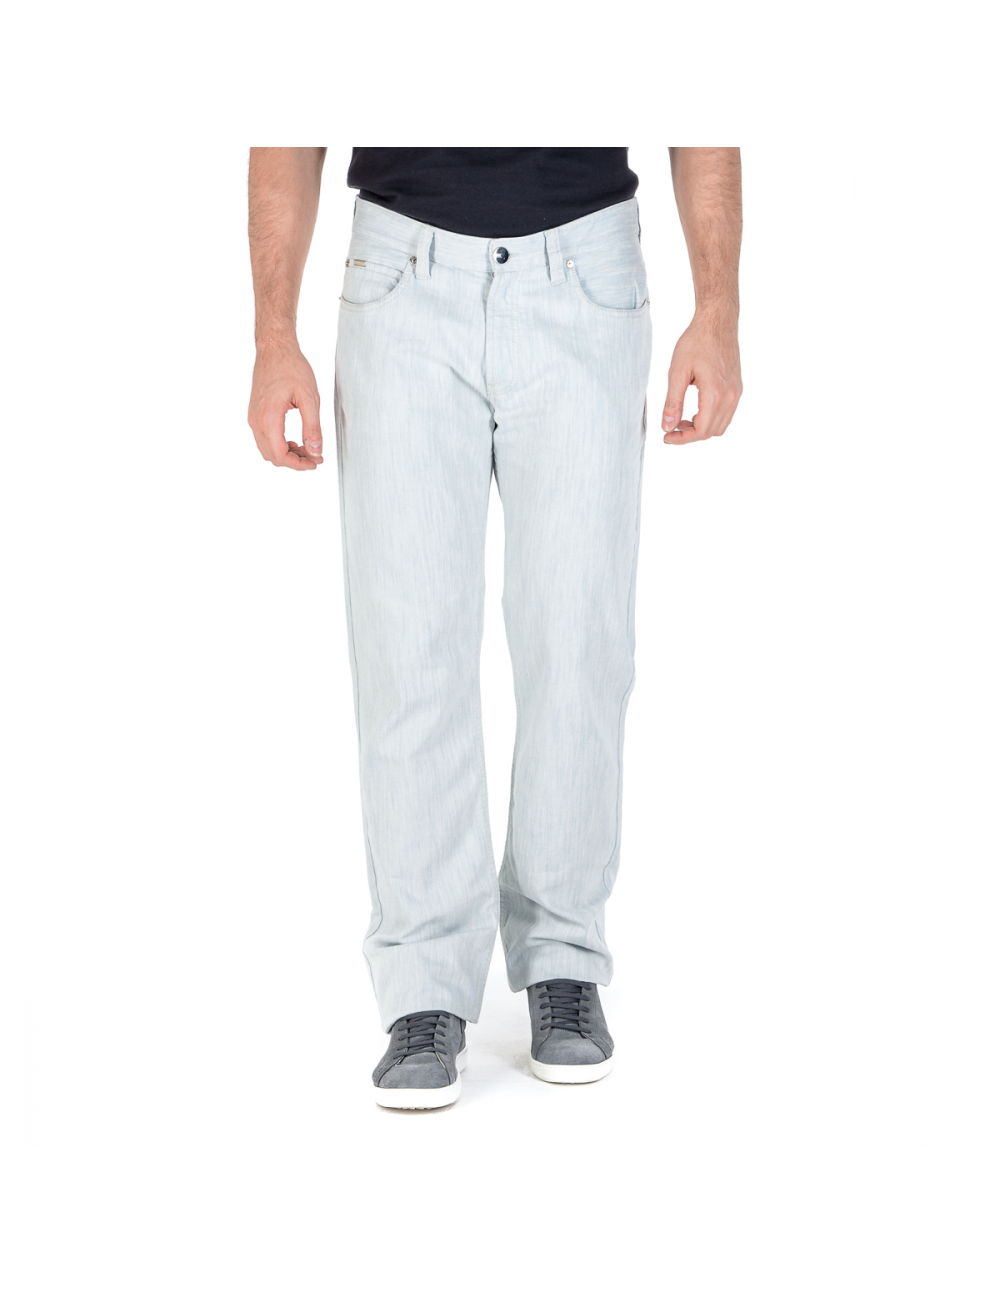 Armani Collezioni Mens Jeans White - YuppyCollections